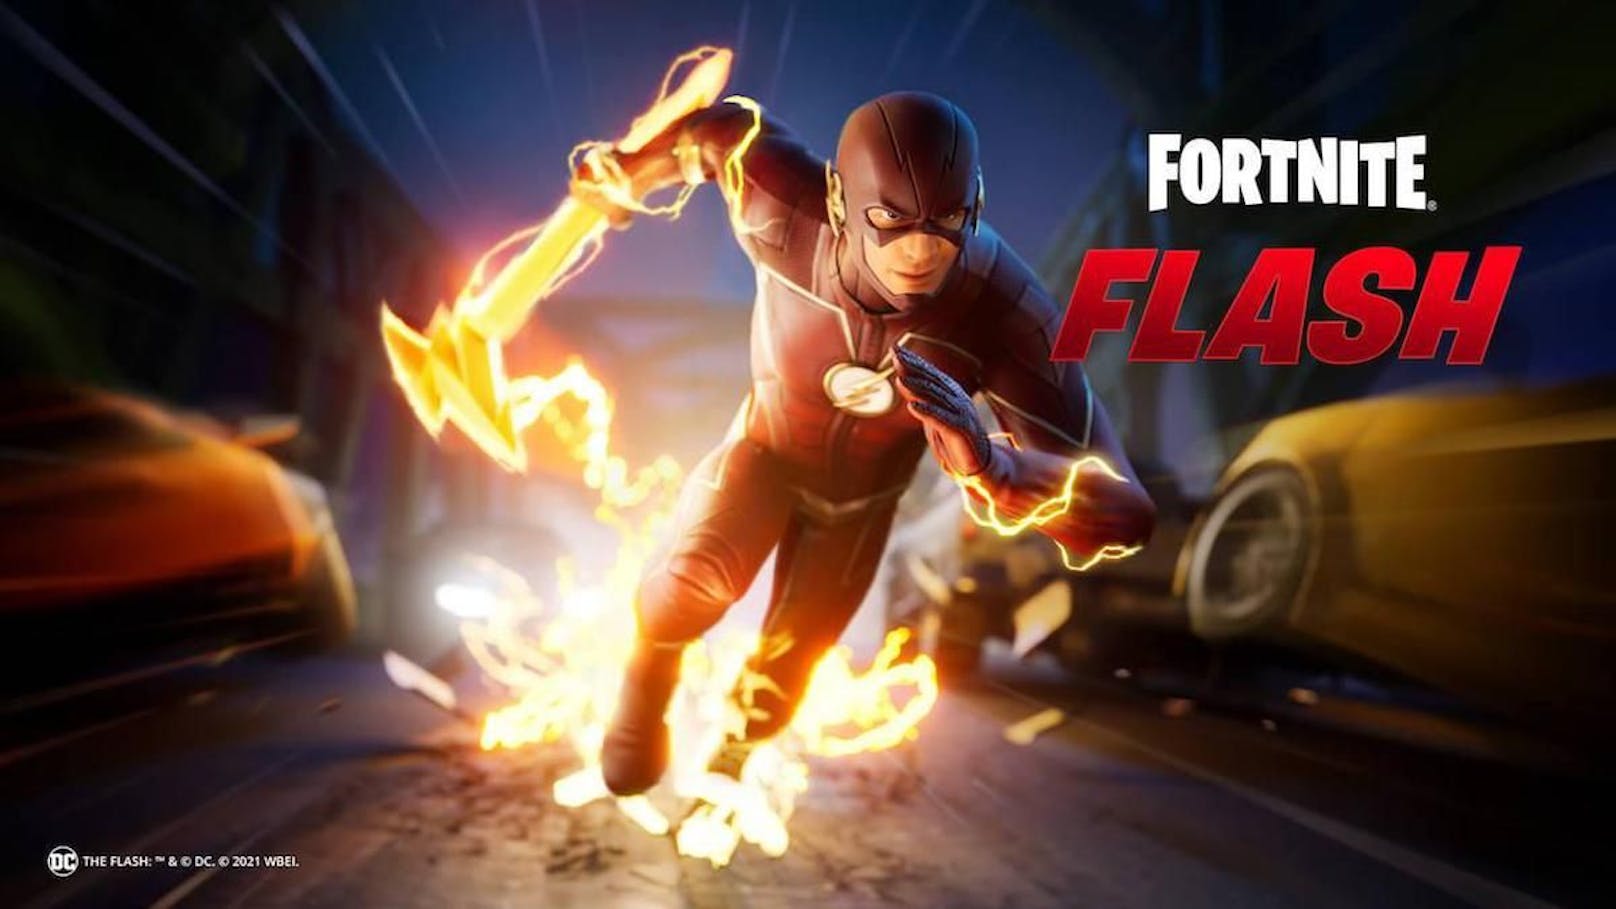 Auch "The Flash" hatte seinen Auftritt im Spiel.